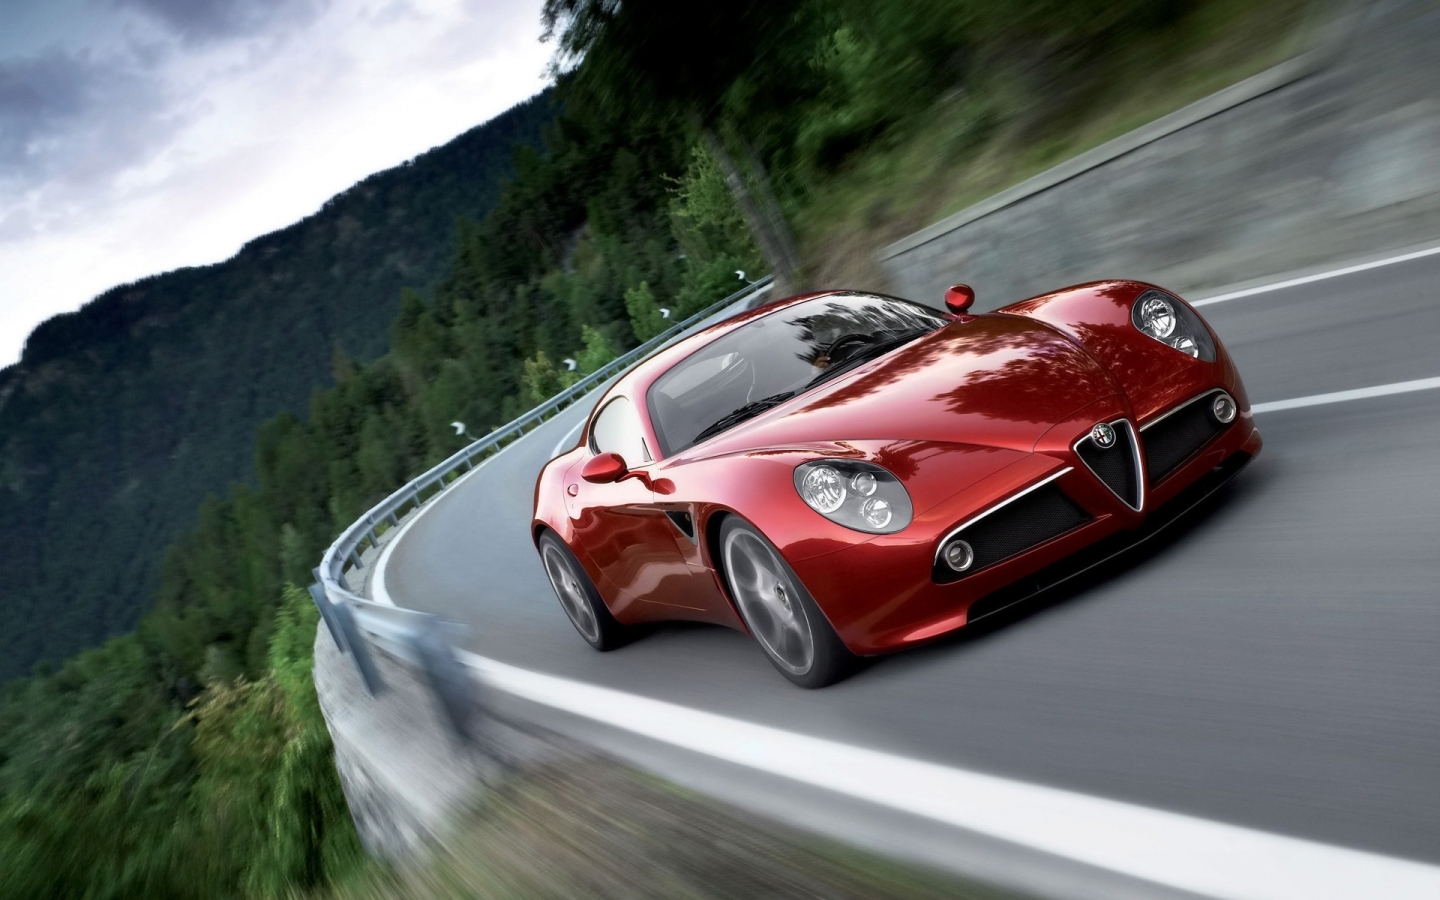 Alfa Romeo Competizione 2009 for 1440 x 900 widescreen resolution